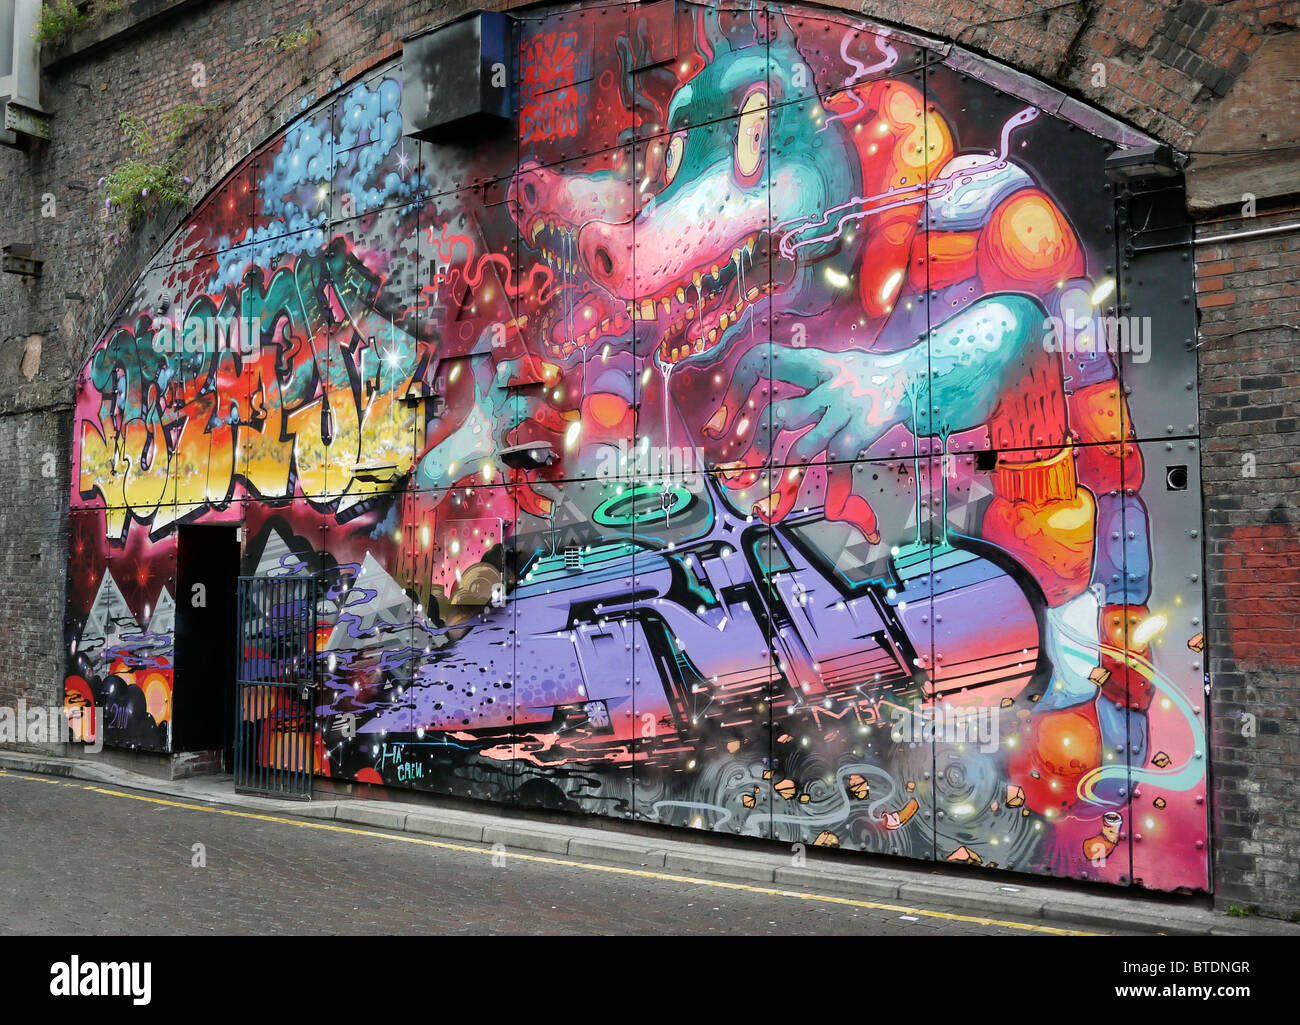 street-art-under-railway-arches-in-manchester-city-centre-uk-BTDNGR.jpg